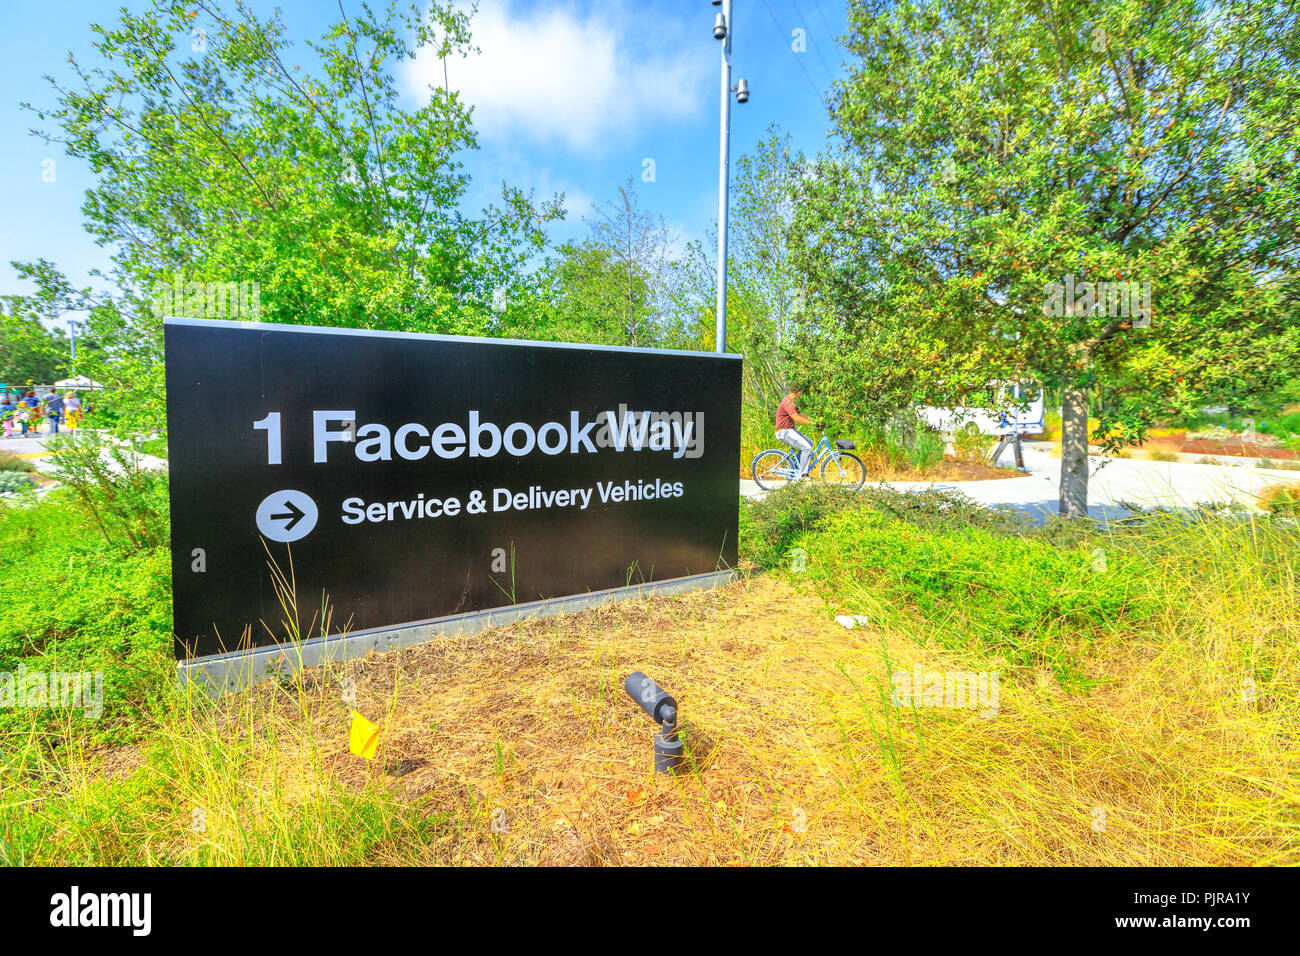 Menlo Park, Kalifornien, USA - 13. August 2018: Facebook HQ Eingang am neuen Campus im Silicon Valley. Im Hintergrund eine junge Mitarbeiterin geht mit der Firma Fahrrad zur Arbeit. Stockfoto